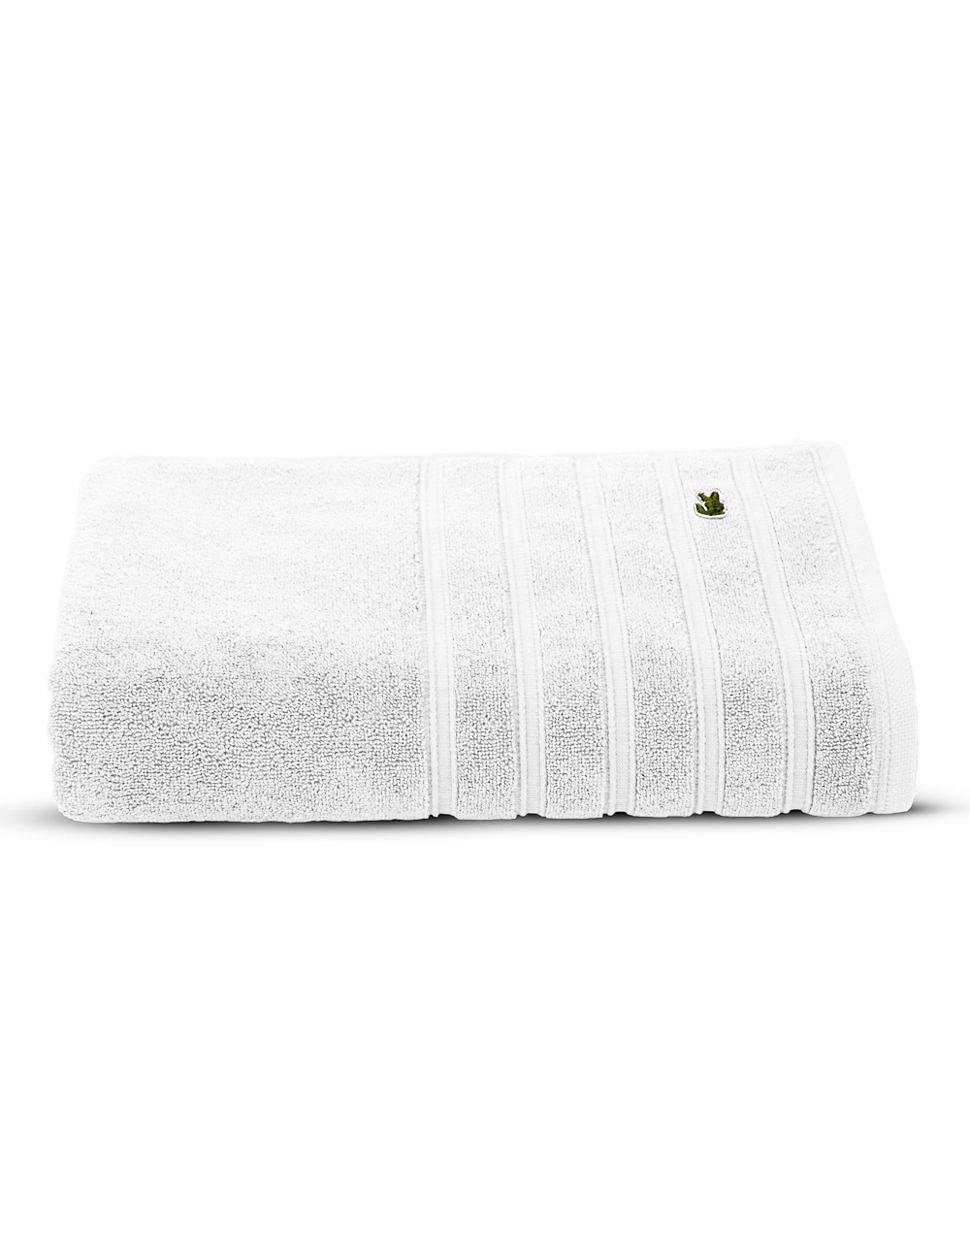 Lacoste 100% Cotton Hand Towel & Reviews